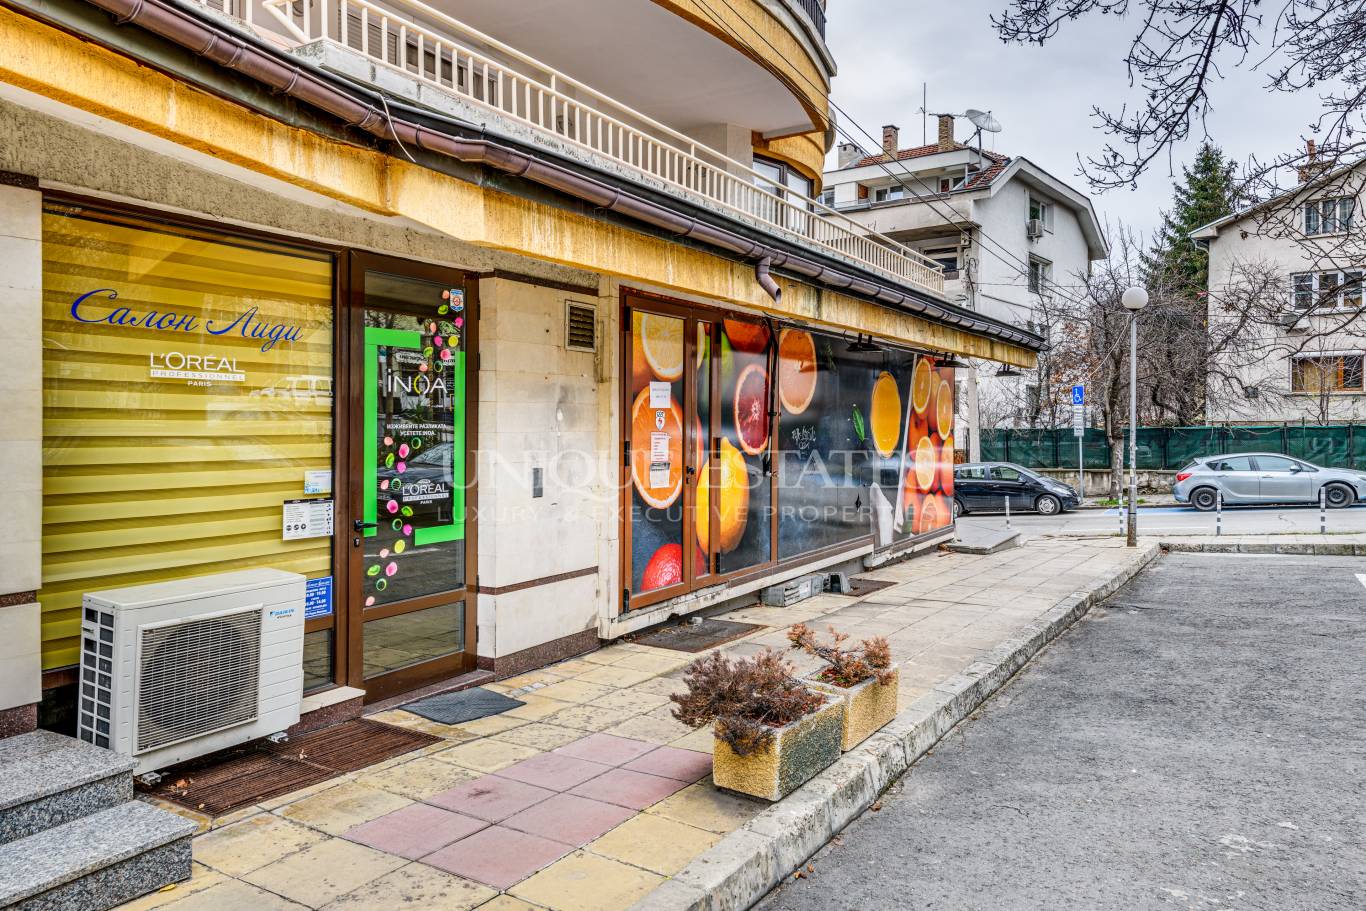 Търговски обект под наем в София, Лозенец - код на имота: N16739 - image 5